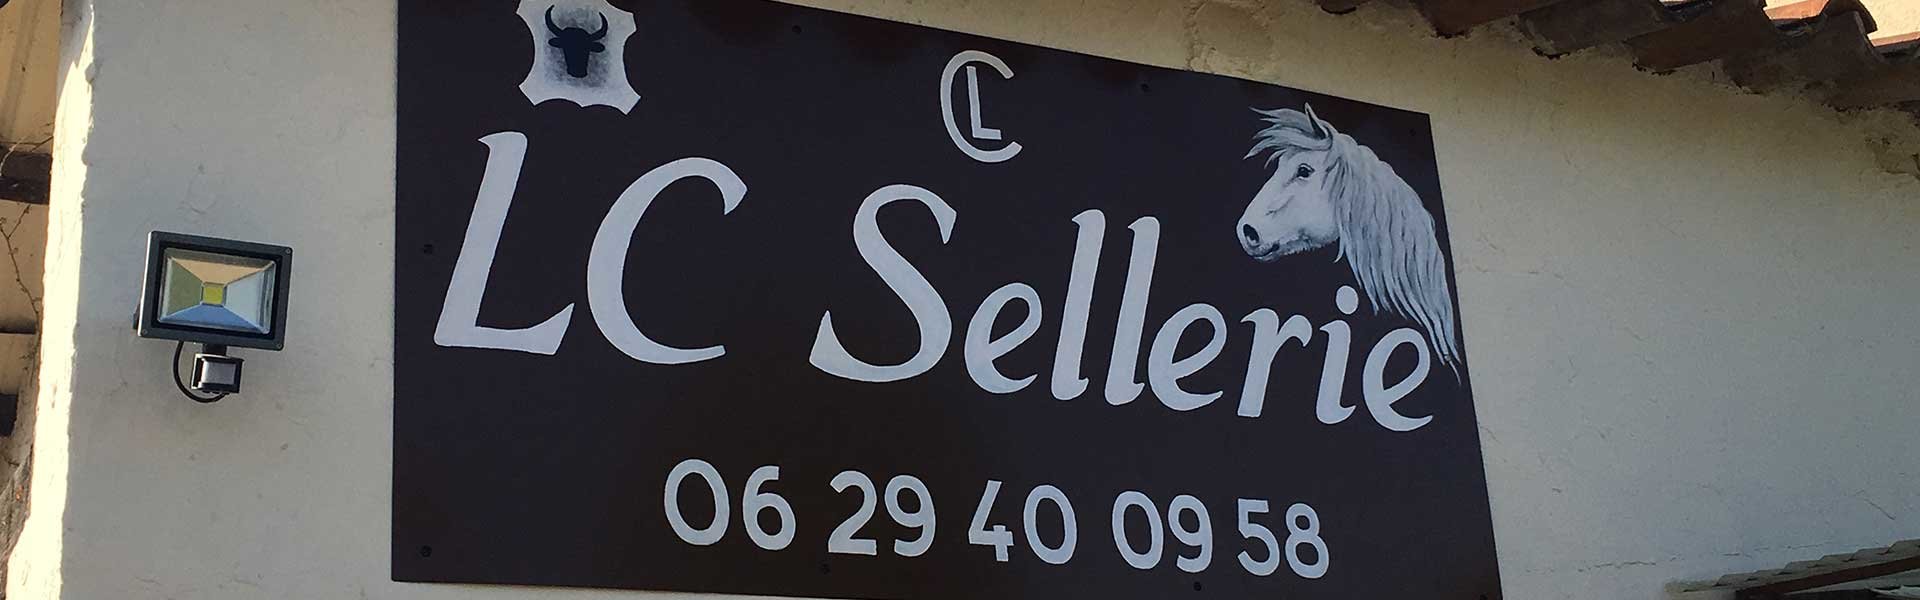 LC Sellerie, entreprise de sellerie et maroquinerie artisanale dans le Gard